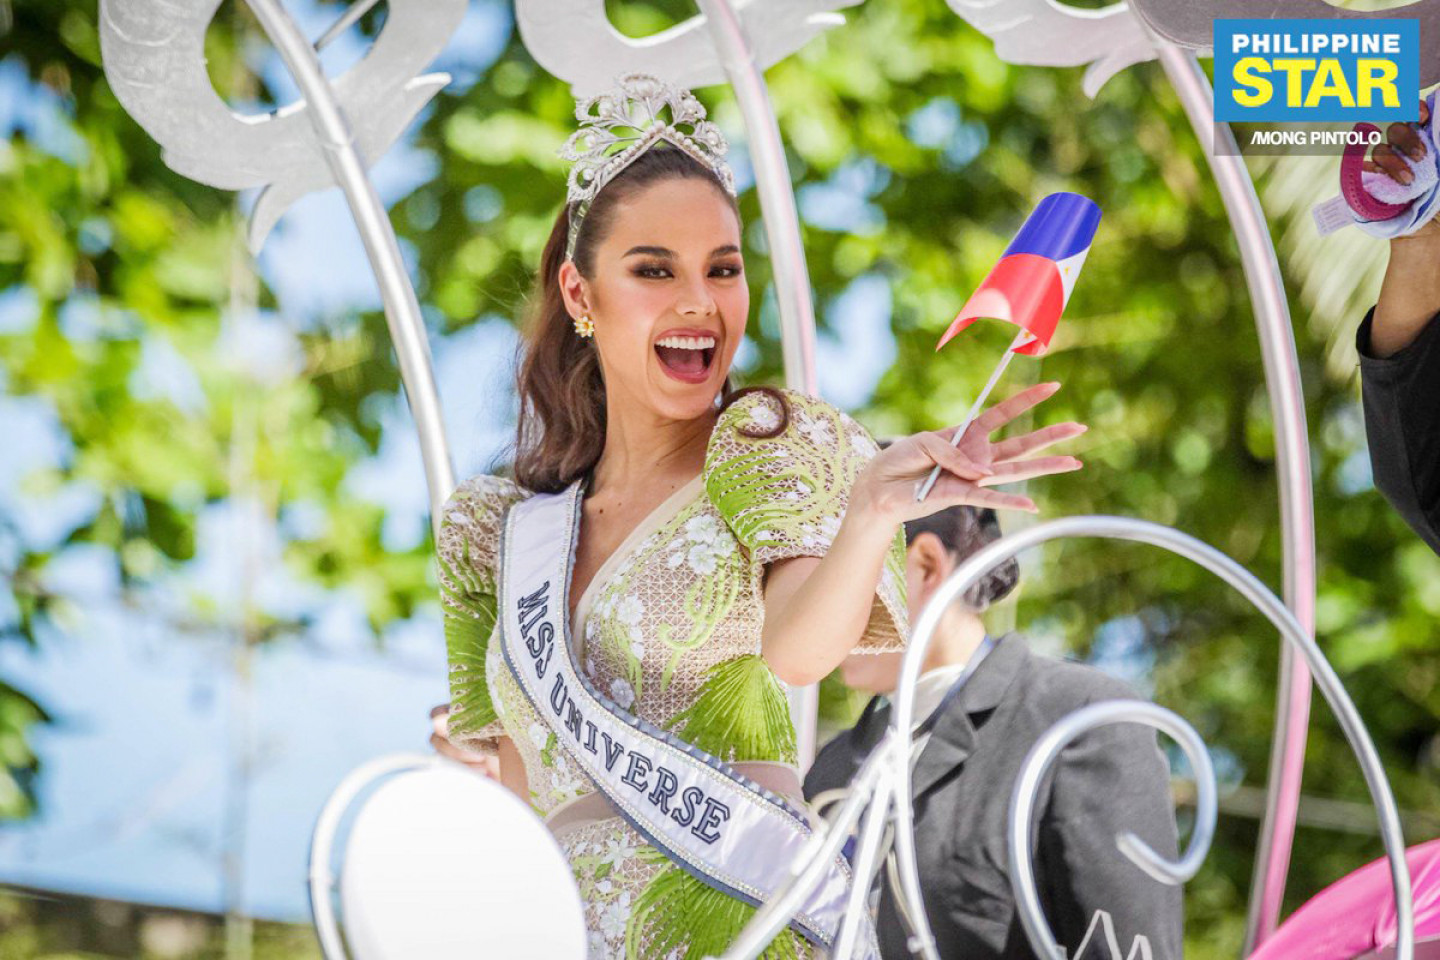 Ngày 17/12/2018, tại Bangkok (Thái Lan), vượt qua 93 thí sinh đến từ các quốc gia và vùng lãnh thổ, người đẹp Catriona Gray (Philippines) đã đăng quang Hoa hậu Hoàn vũ. Tại cuộc thi này, đại diện Việt Nam là HHen Niê cũng lập kỳ tích khi vào Top 5 thí sinh xuất sắc nhất